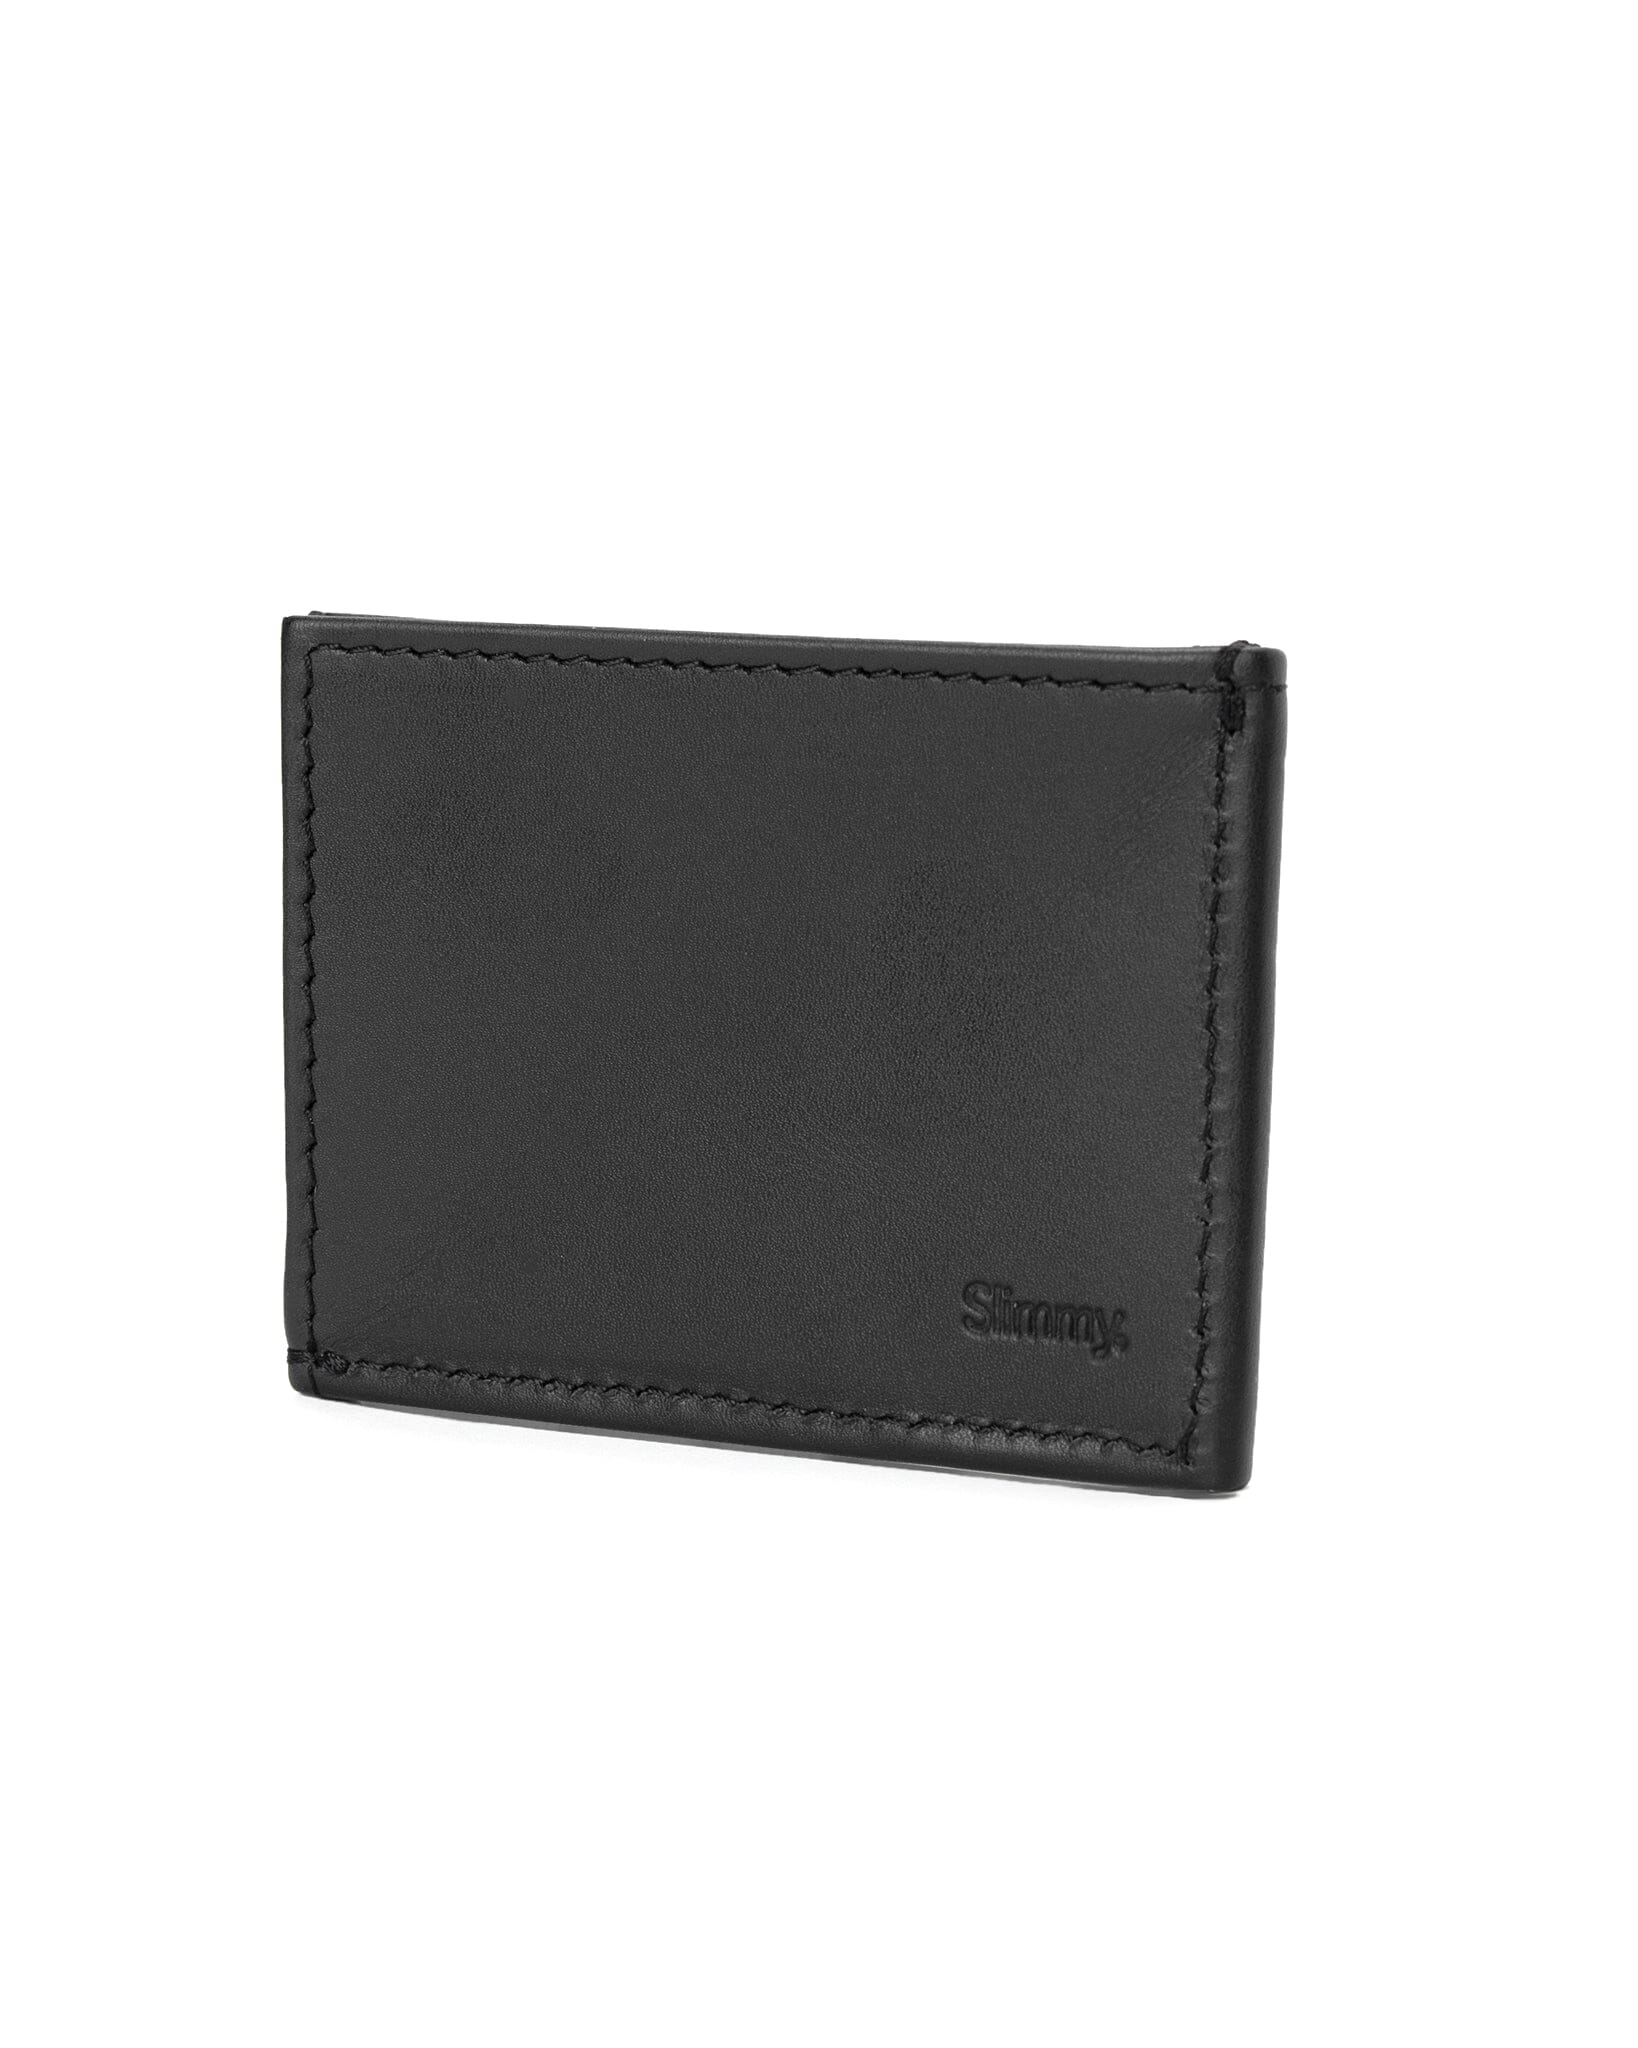 OG 3-Pocket Wallet (76mm) - Stealth Wallet Slimmy   